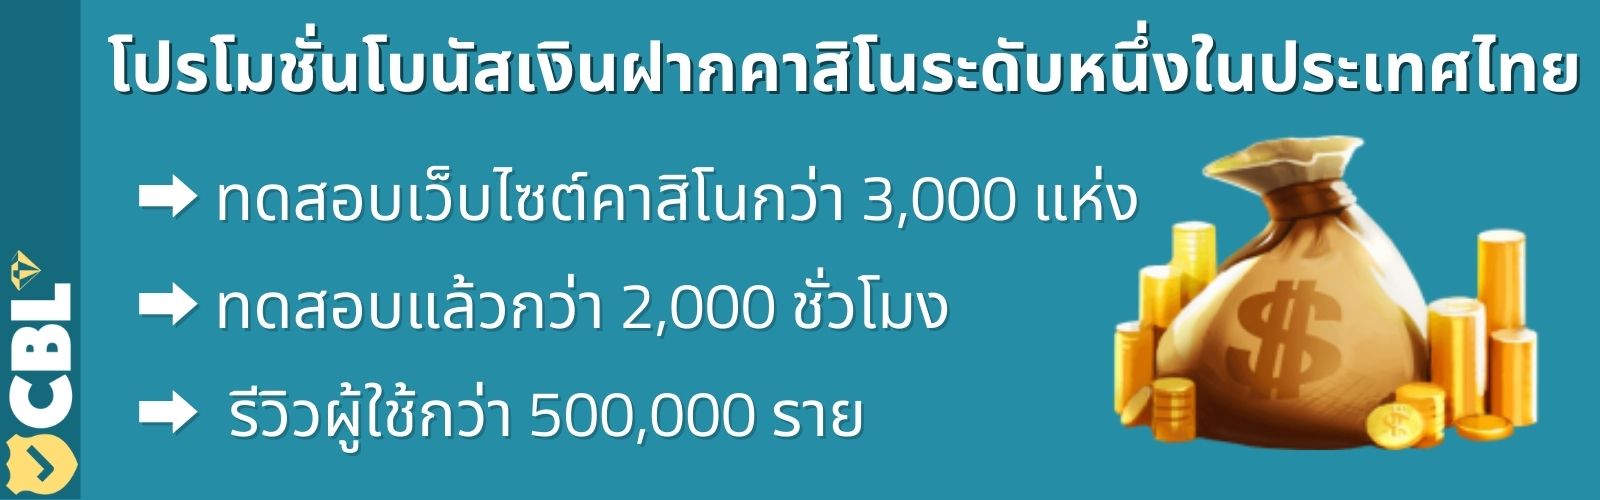 โปรโมชั่นโบนัสเงินฝากคาสิโนระดับหนึ่งในประเทศไทย